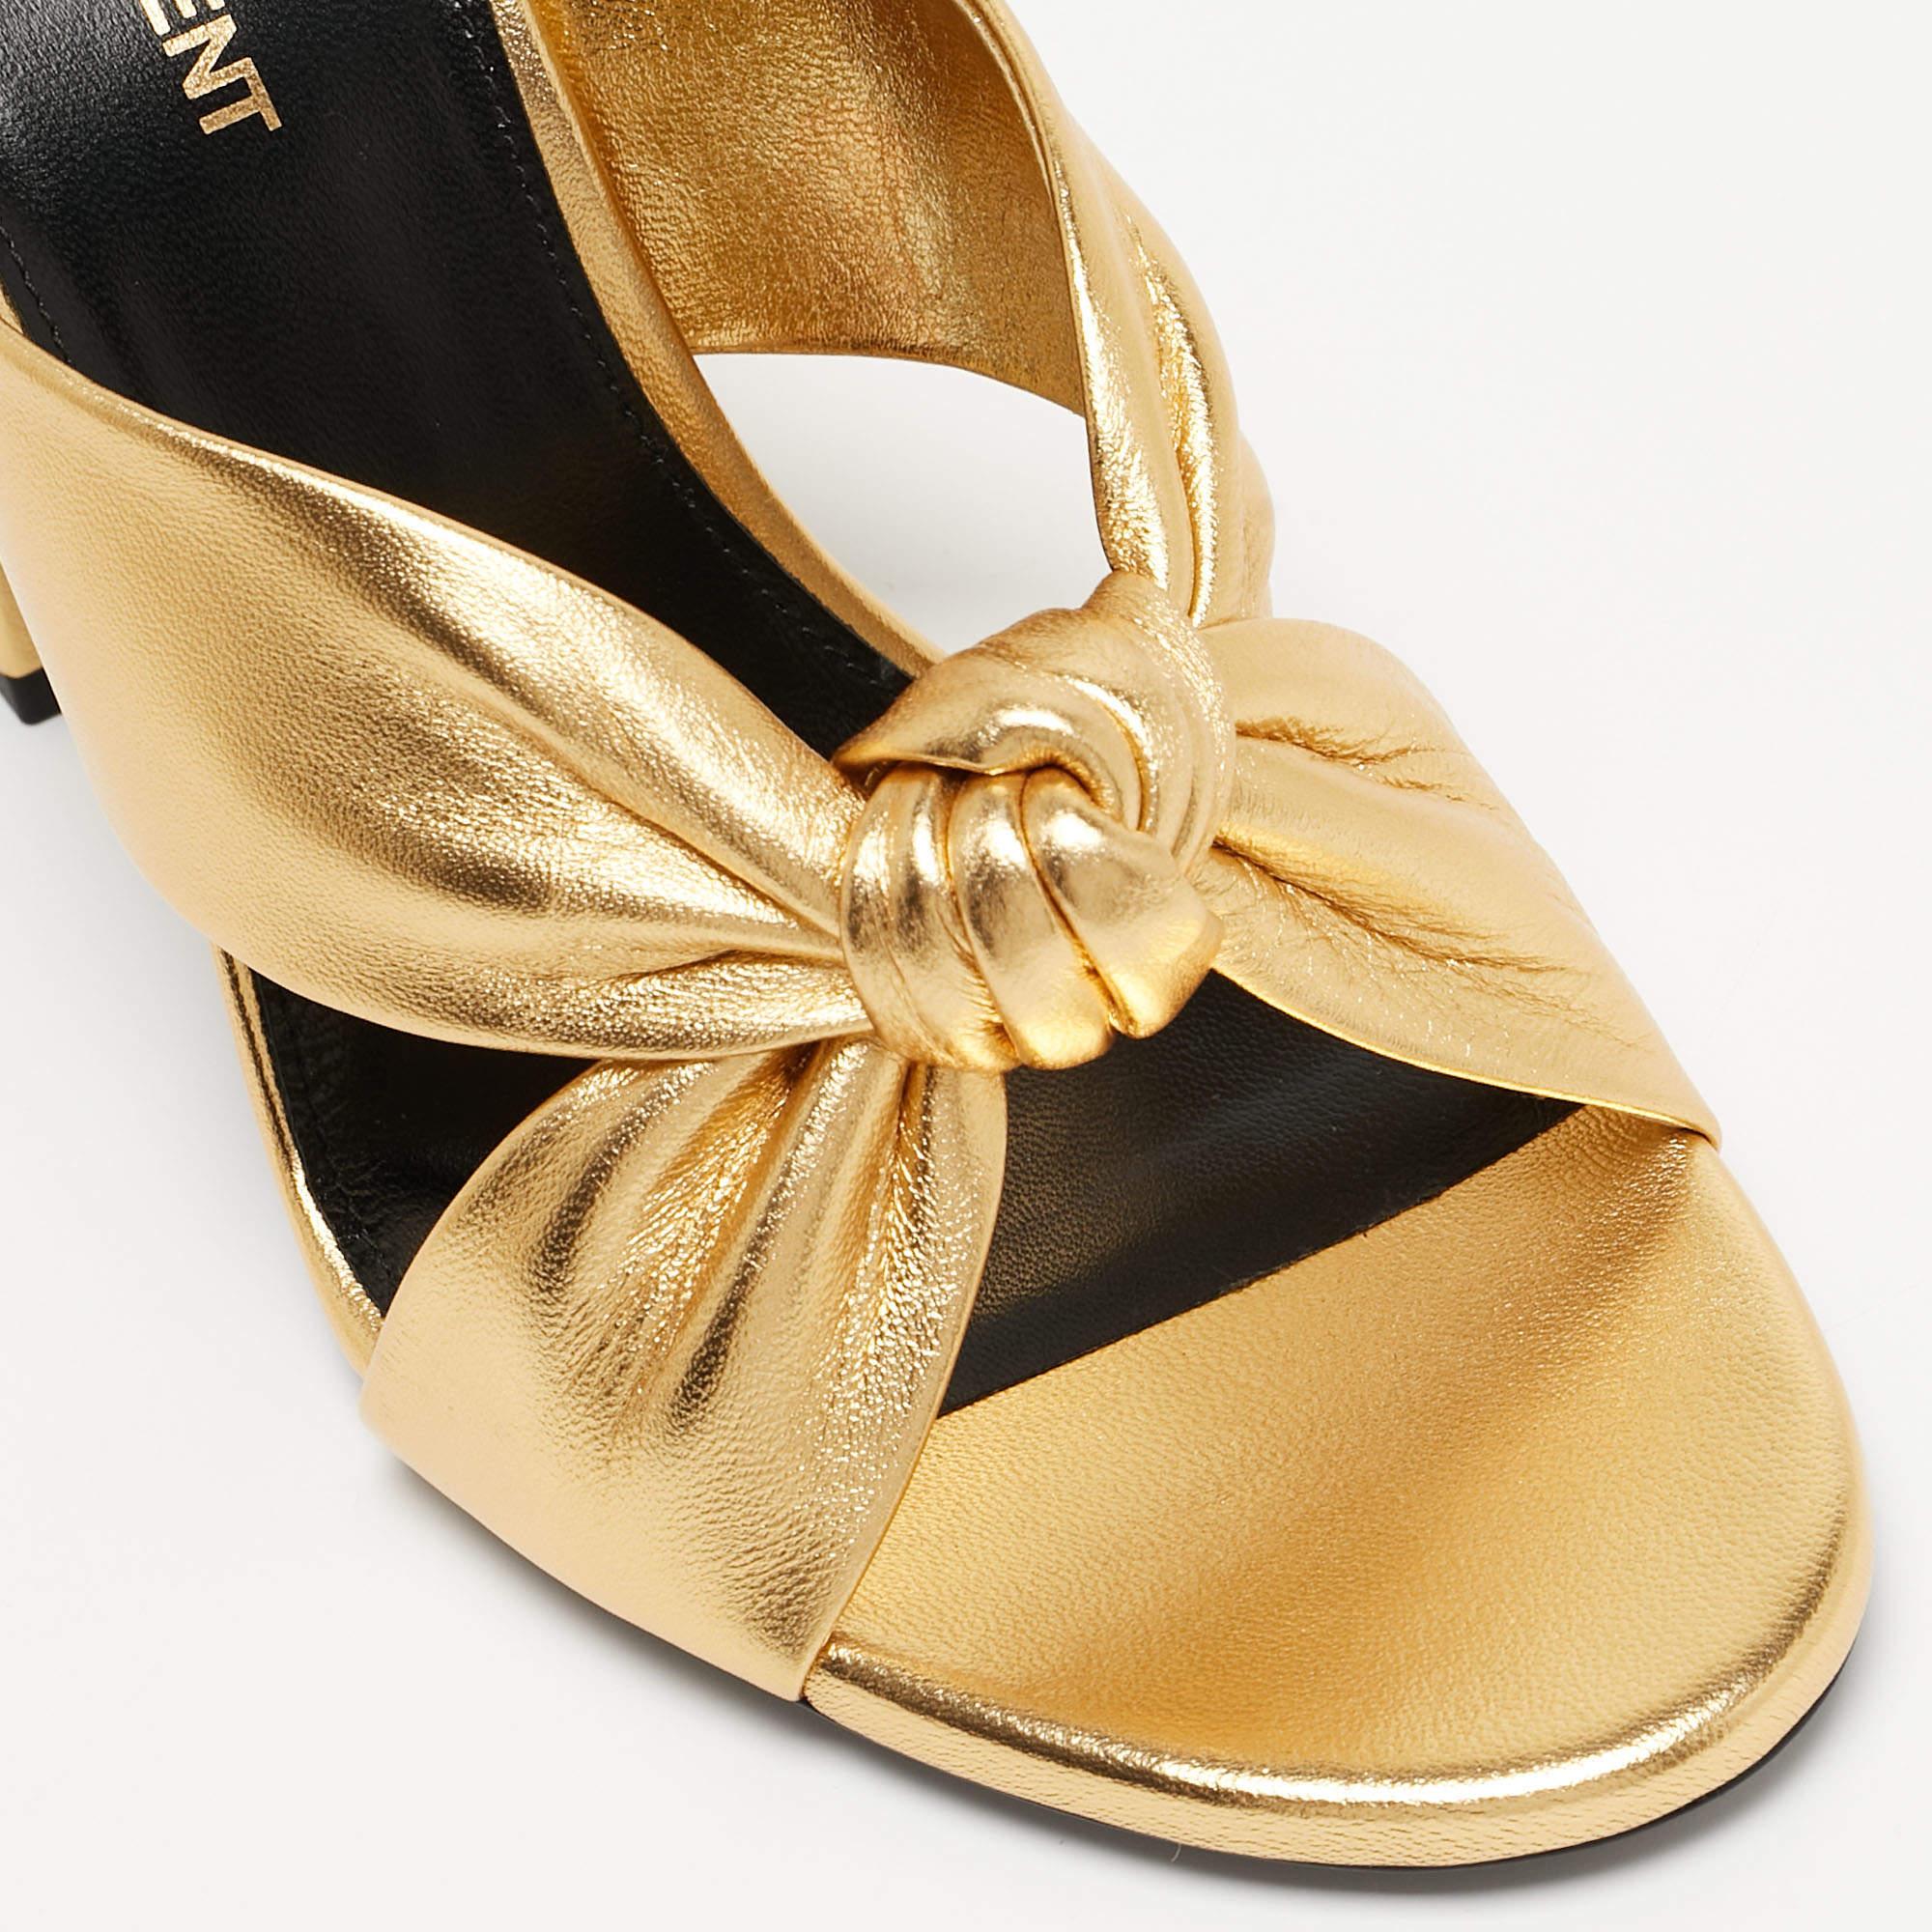 Un coup d'œil à cette paire de diapositives Saint Laurent et nos cœurs se mettent à battre la chamade. Ces superbes chaussures à glissière ont été stylisées à la perfection pour qu'une diva comme vous puisse les arborer. De couleur dorée, ces